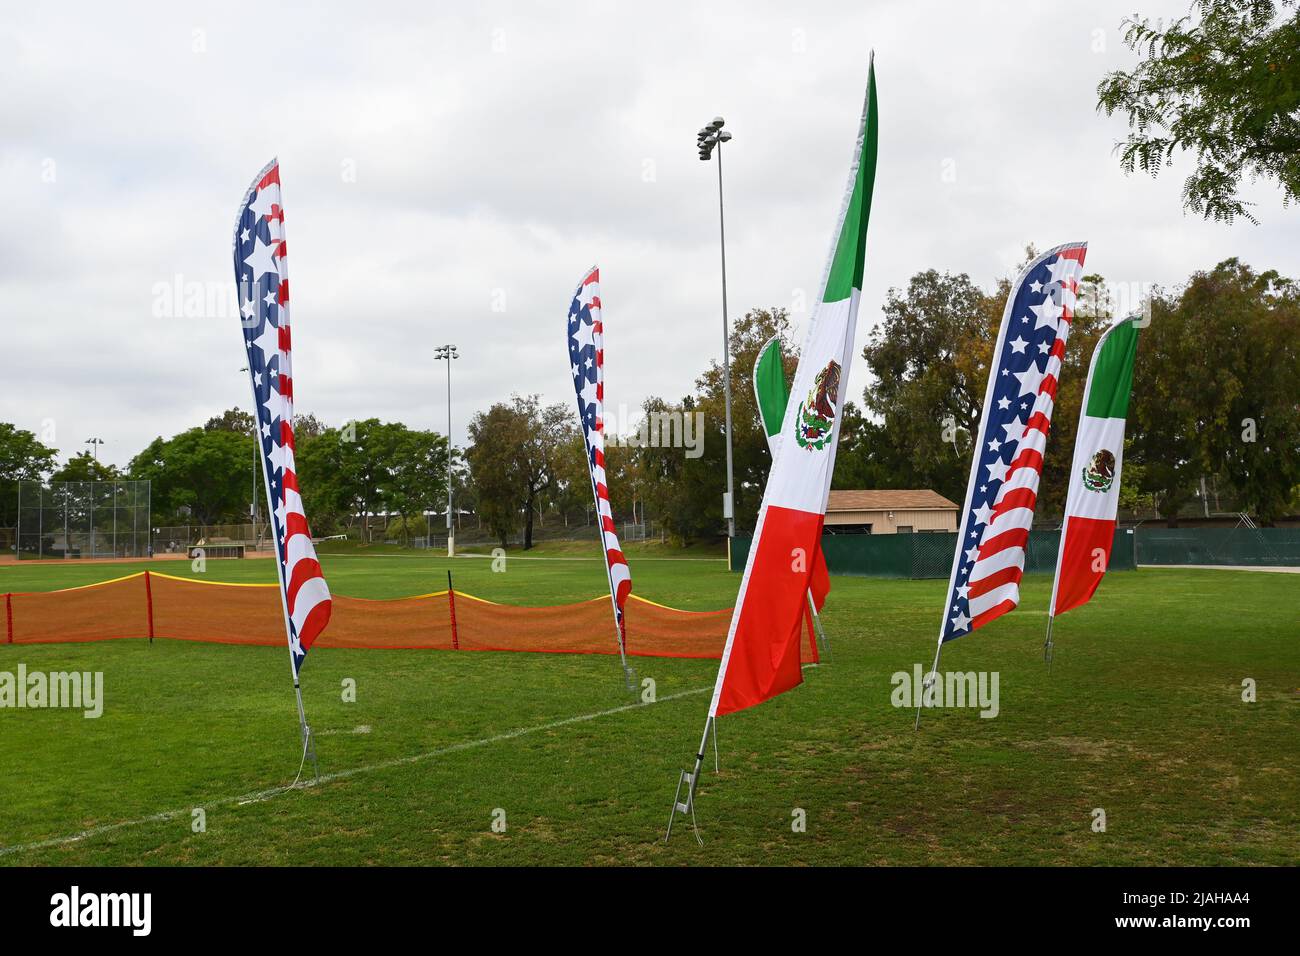 IRVINE, CALIFORNIA - 26 DE MAYO de 2022: Banderas con las banderas de los Estados Unidos y México para el Torneo Anual de Béisbol de la Liga Pony del Día de los Caídos A Foto de stock